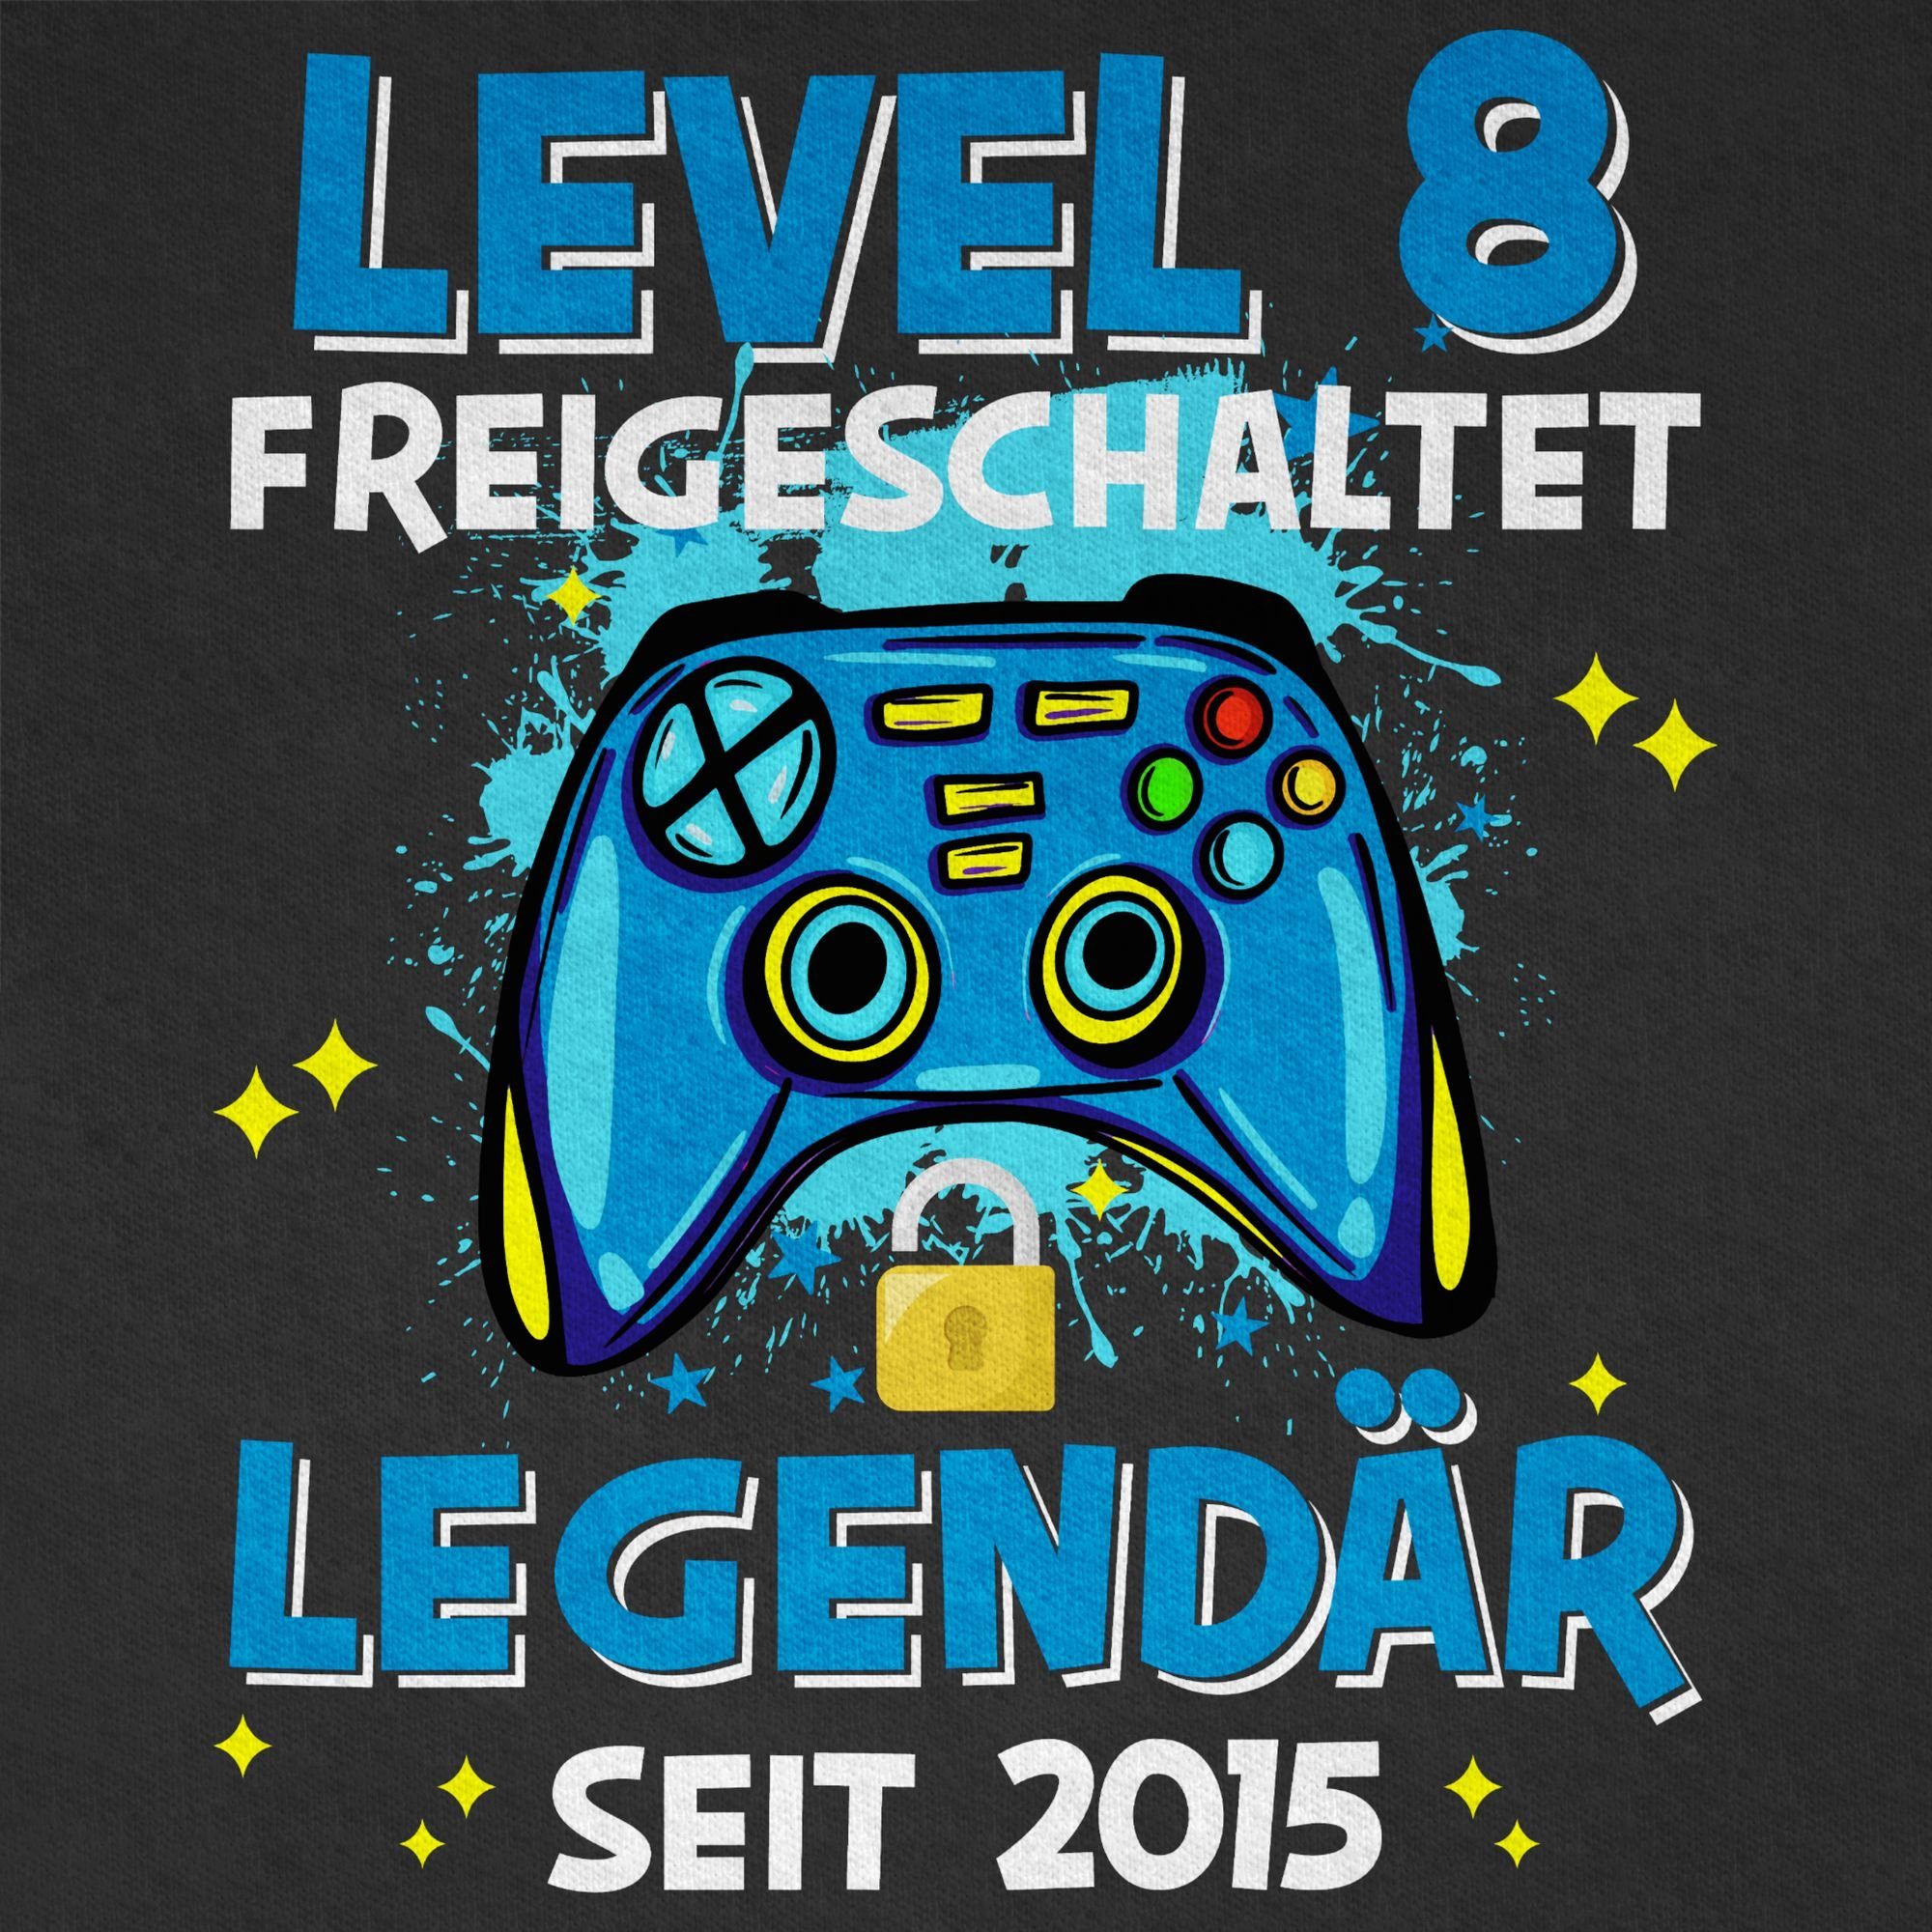 Shirtracer T-Shirt Level 8 freigeschaltet 03 Geburtstag seit Legendär 2015 8. Schwarz